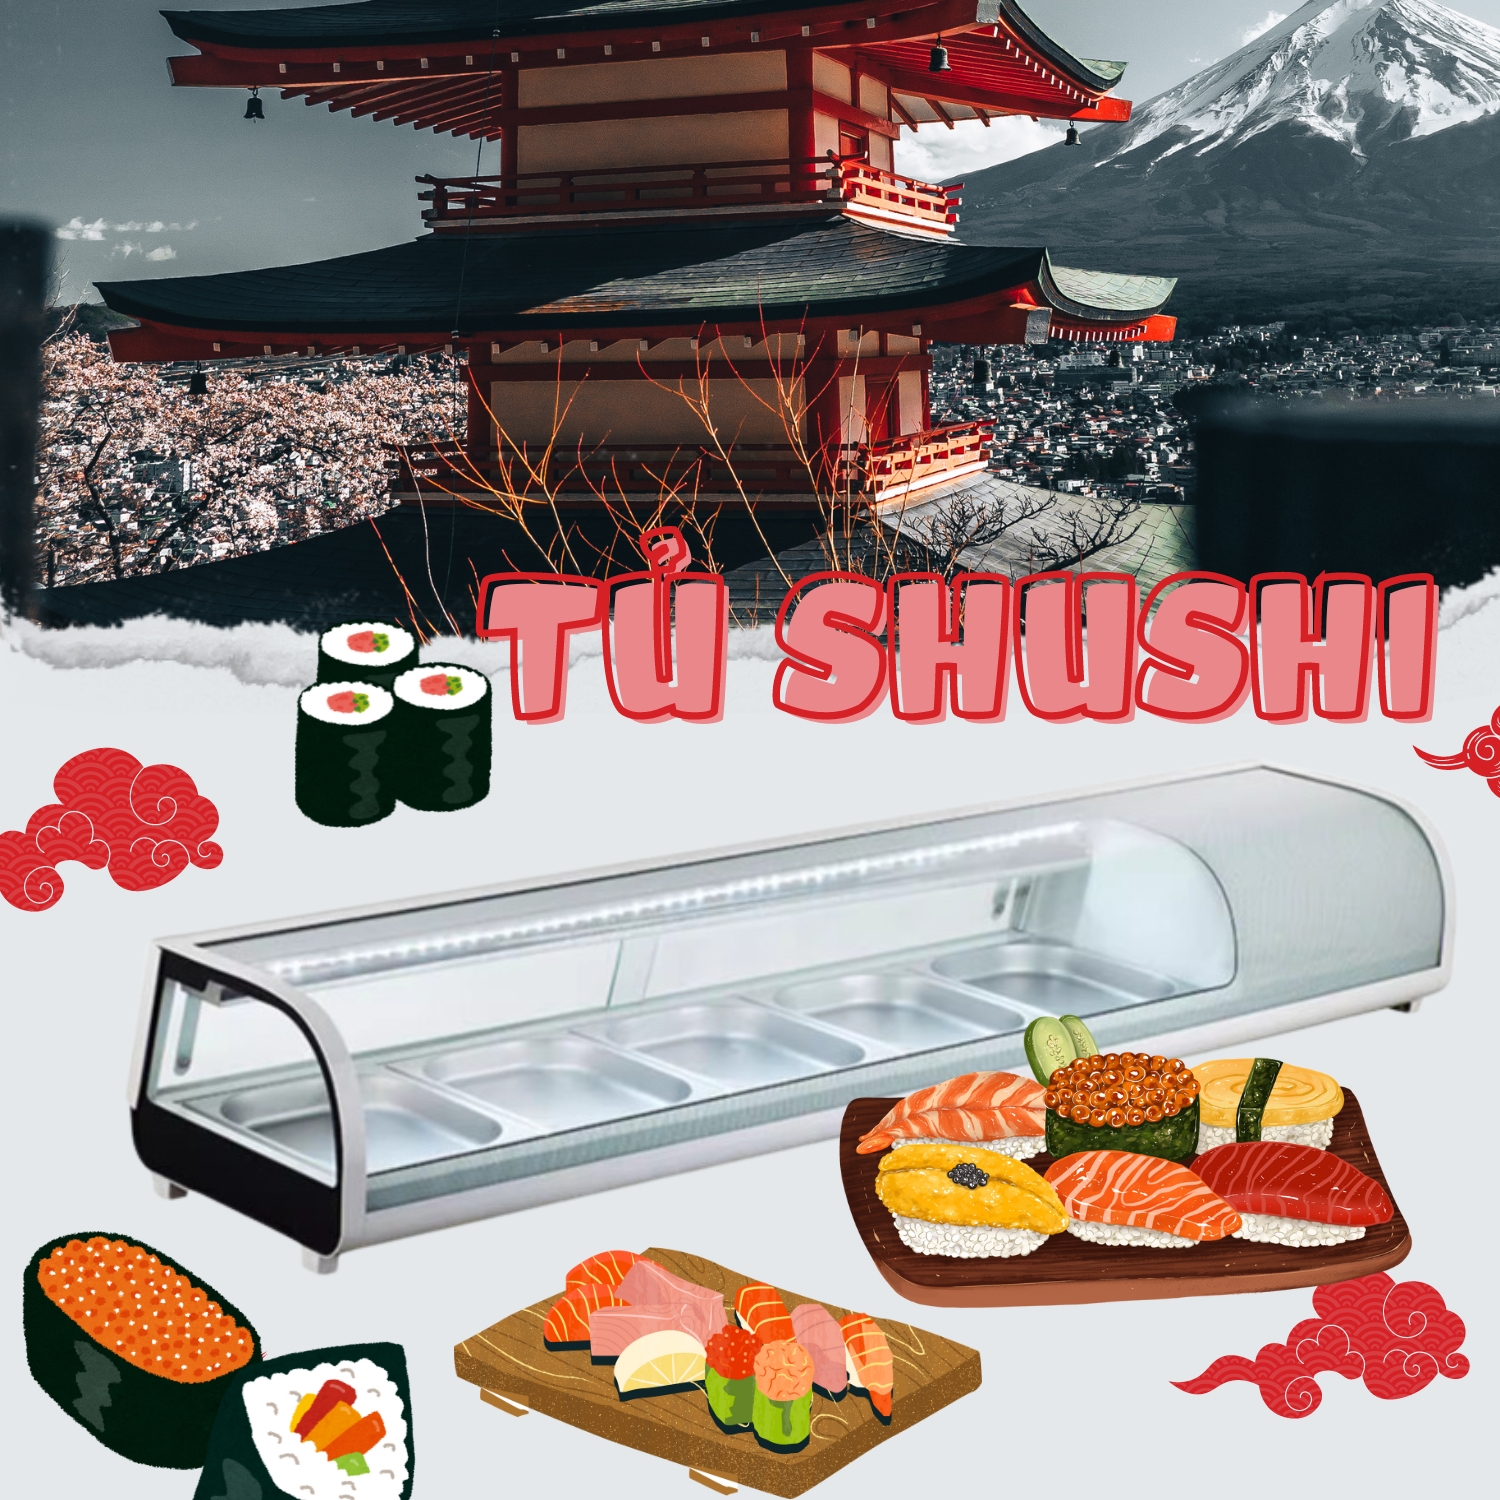 NEW !!!! Tủ Trưng Bày Lạnh Sushi Có Khay: Giải Pháp Hoàn Hảo Cho Ẩm Thực Nhật Bản